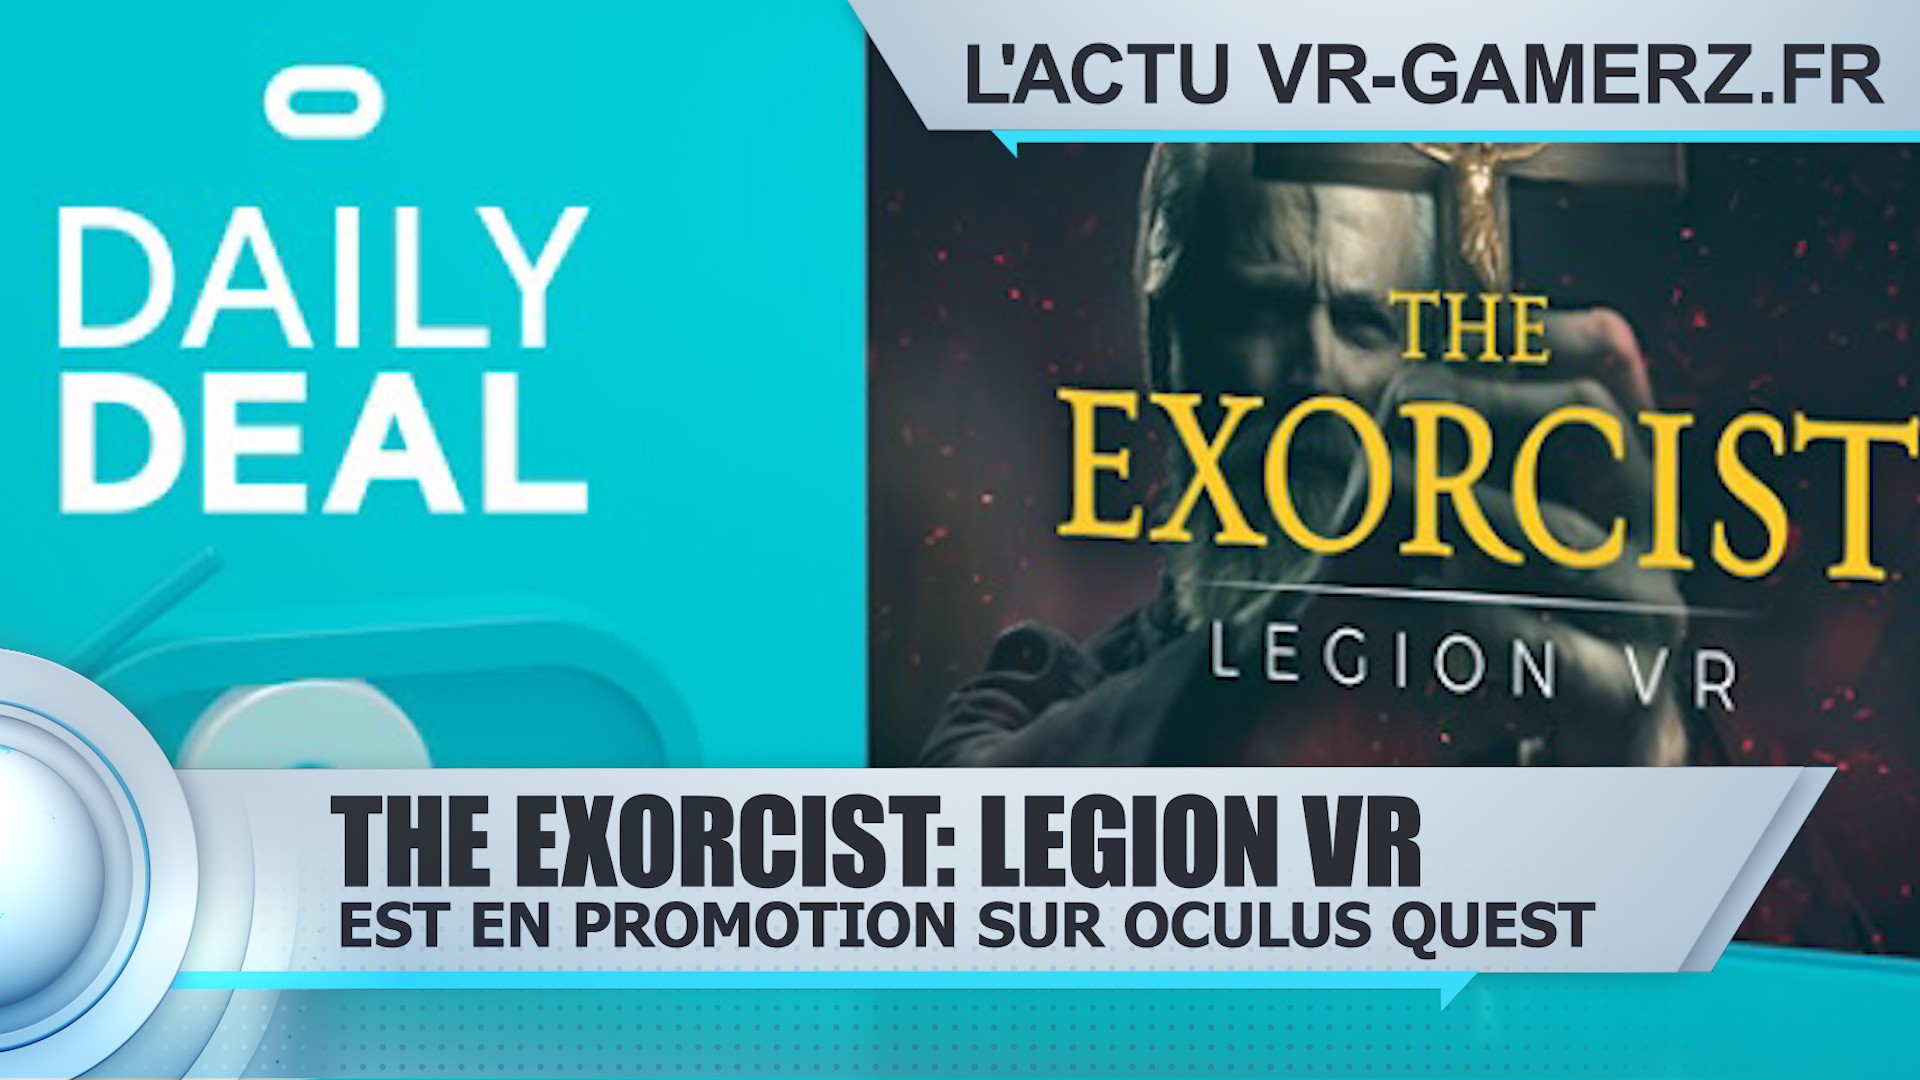 The Exorcist: Legion VR est en promotion sur Oculus quest !